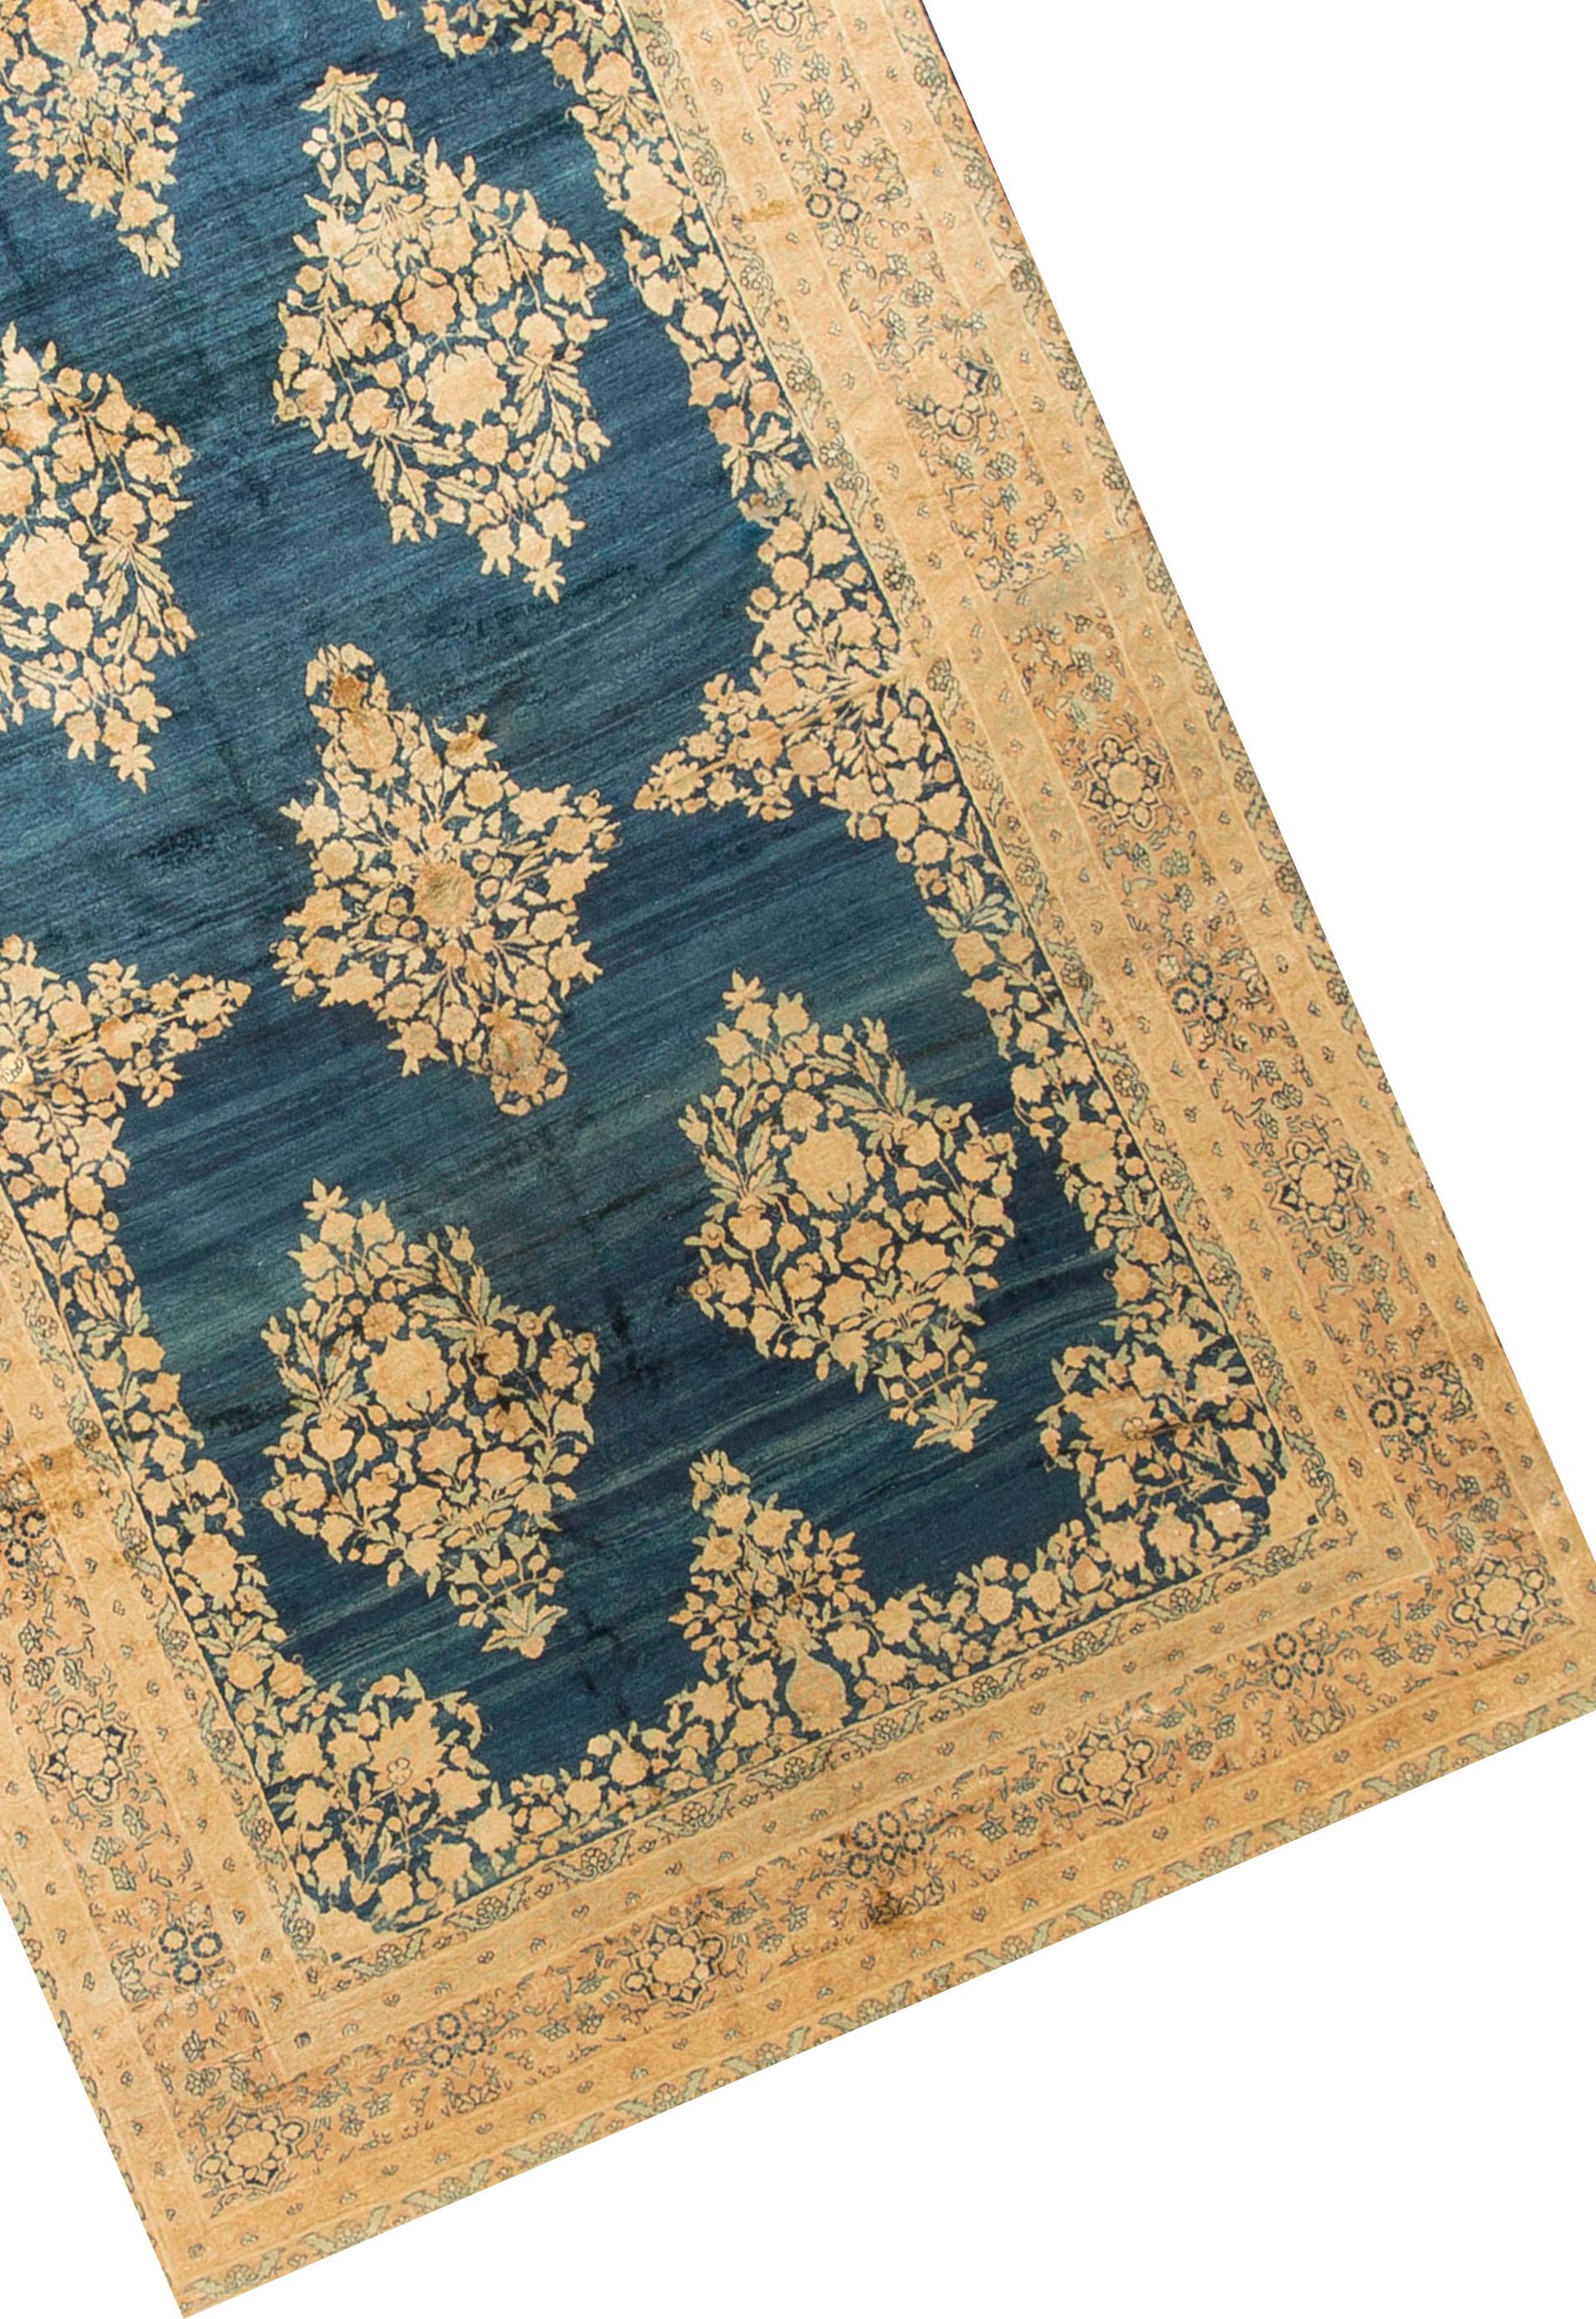 Antique Persian Kerman Rug Carpet, circa 1890 7'6 x 10'6 In Good Condition For Sale In Secaucus, NJ